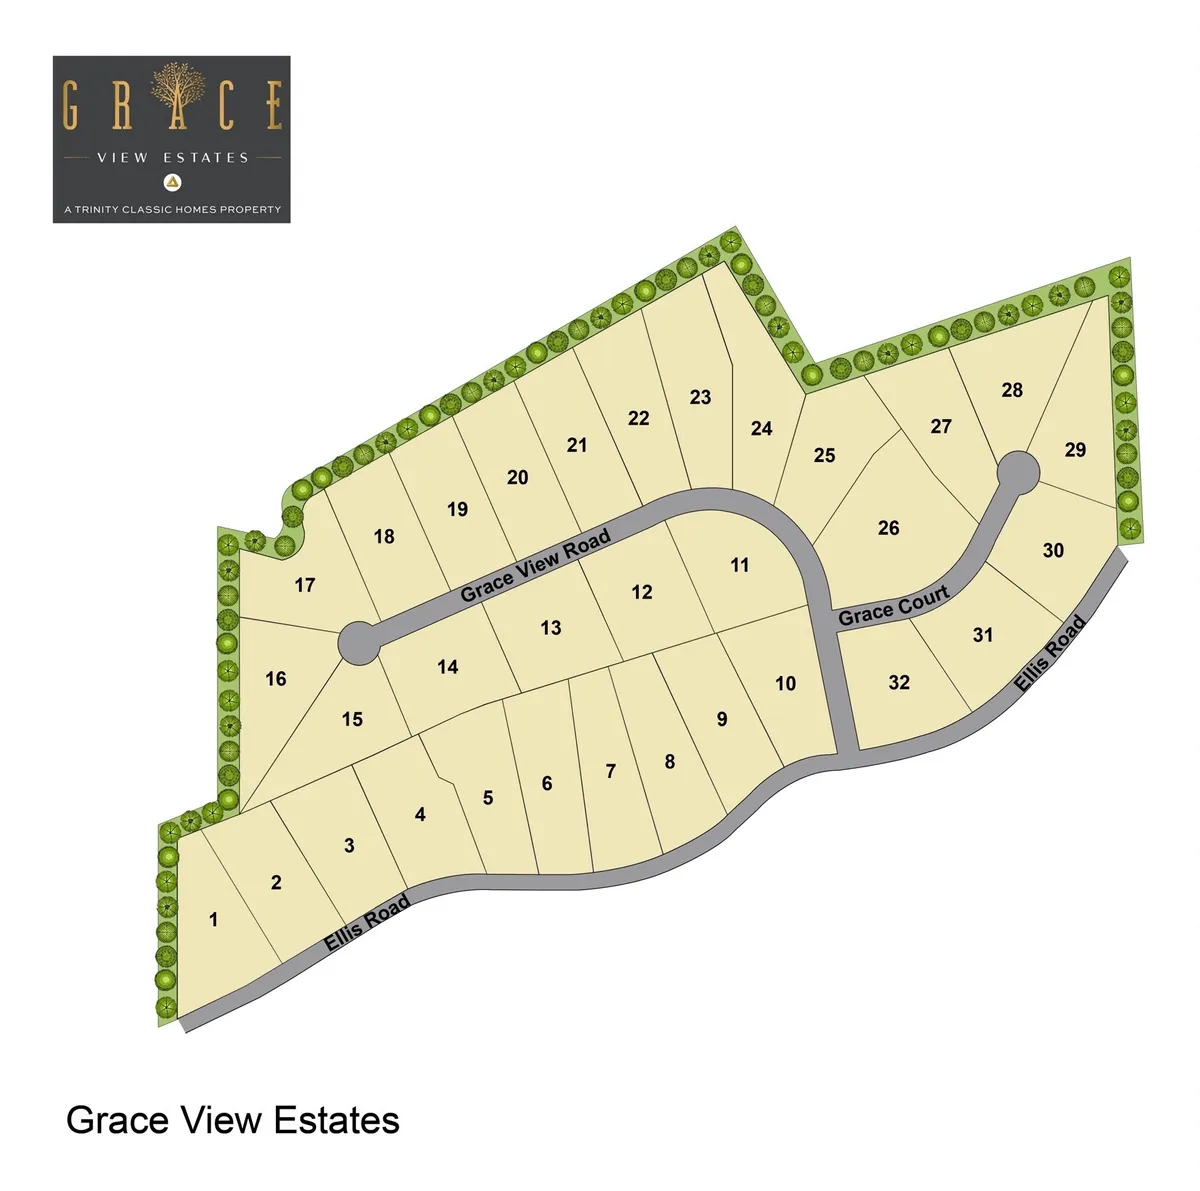 Grace View Estates